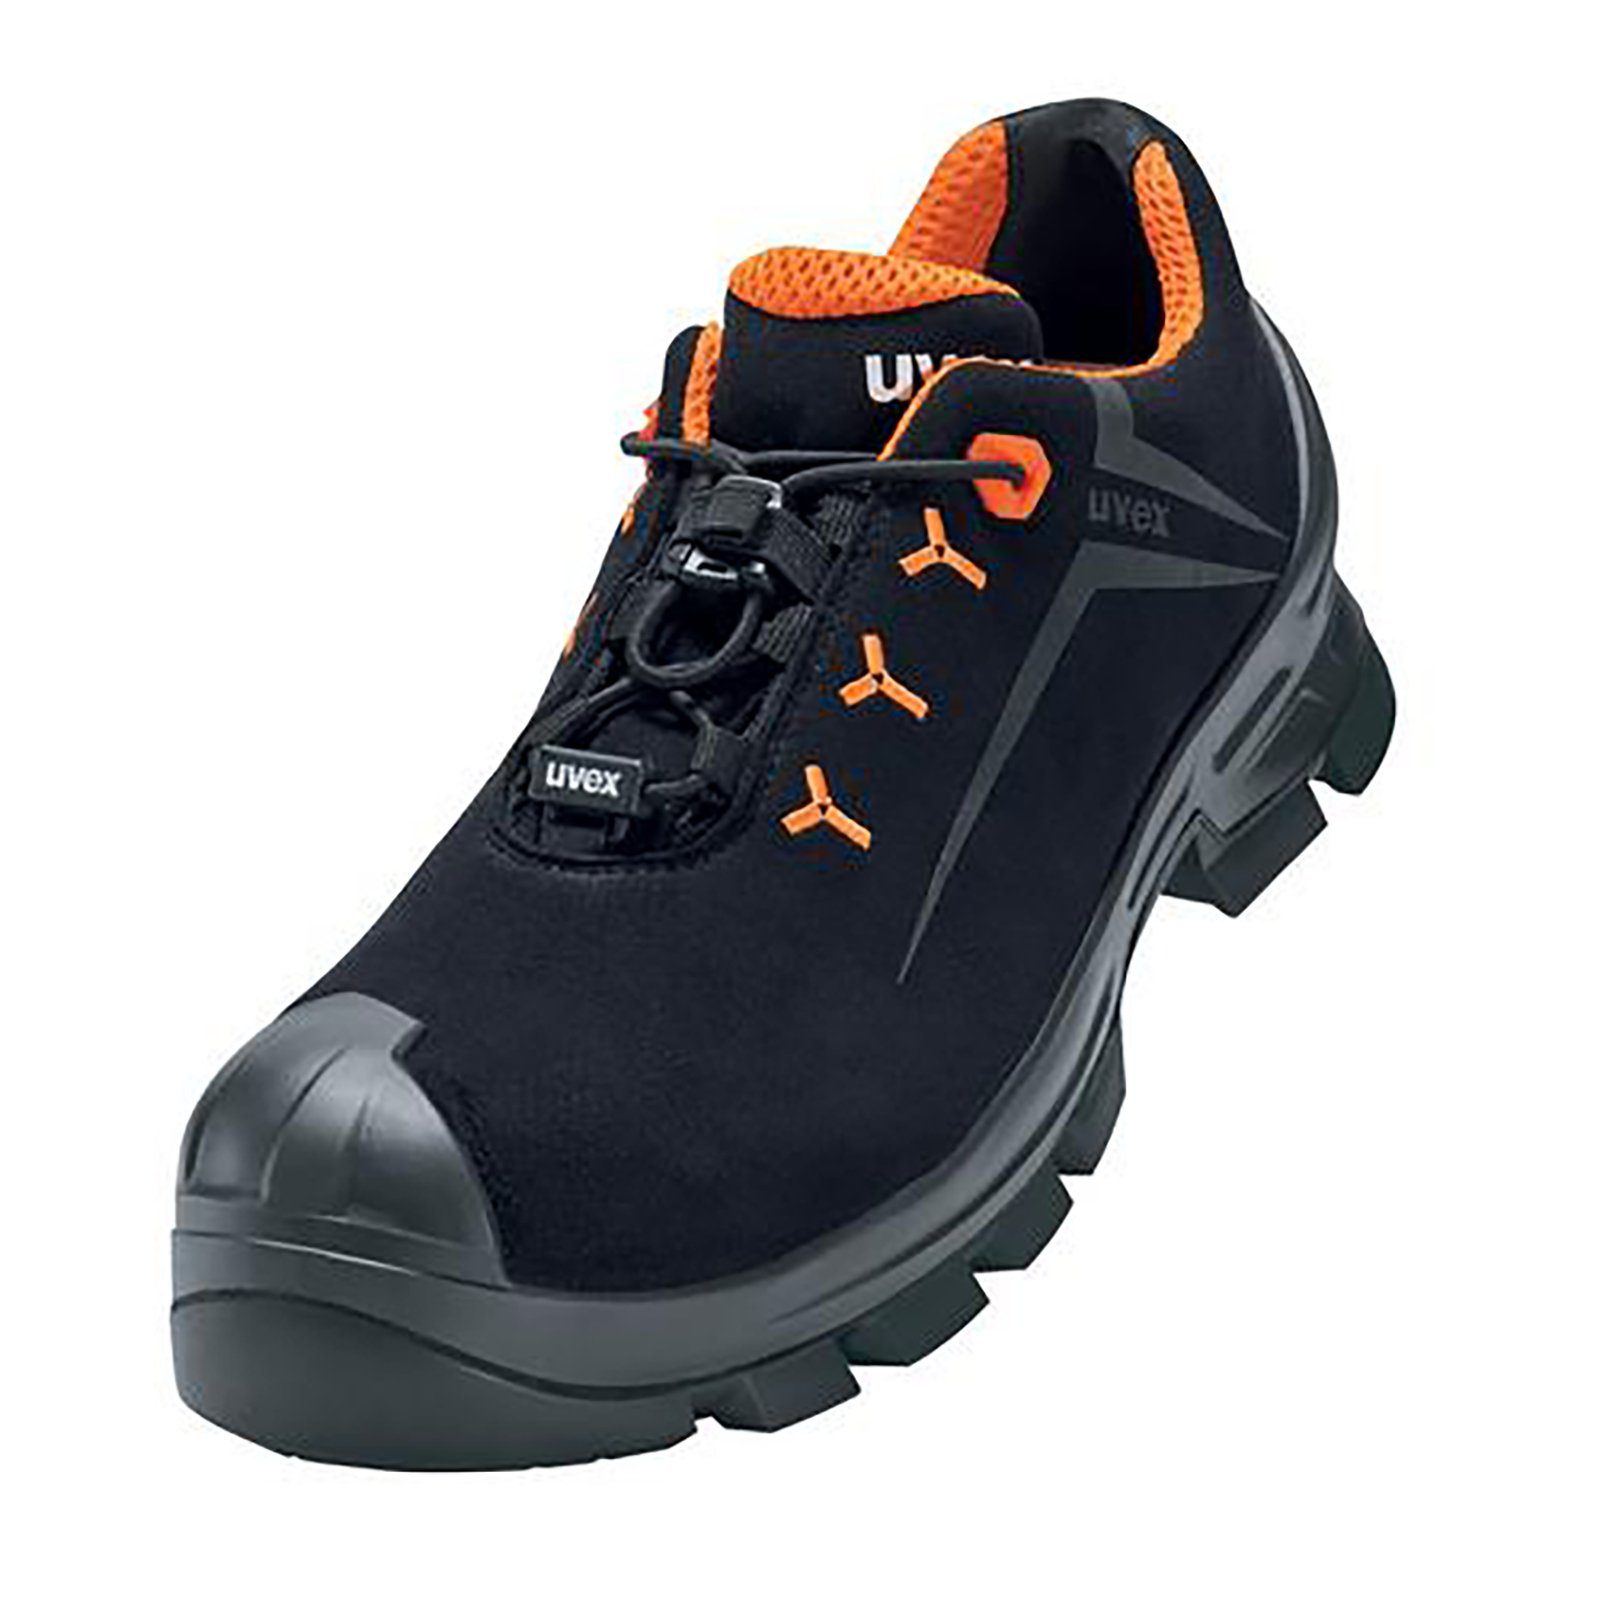 Uvex 2 MACSOLE® Halbschuhe Weite Sicherheitsschuh schwarz, orange 11 S3